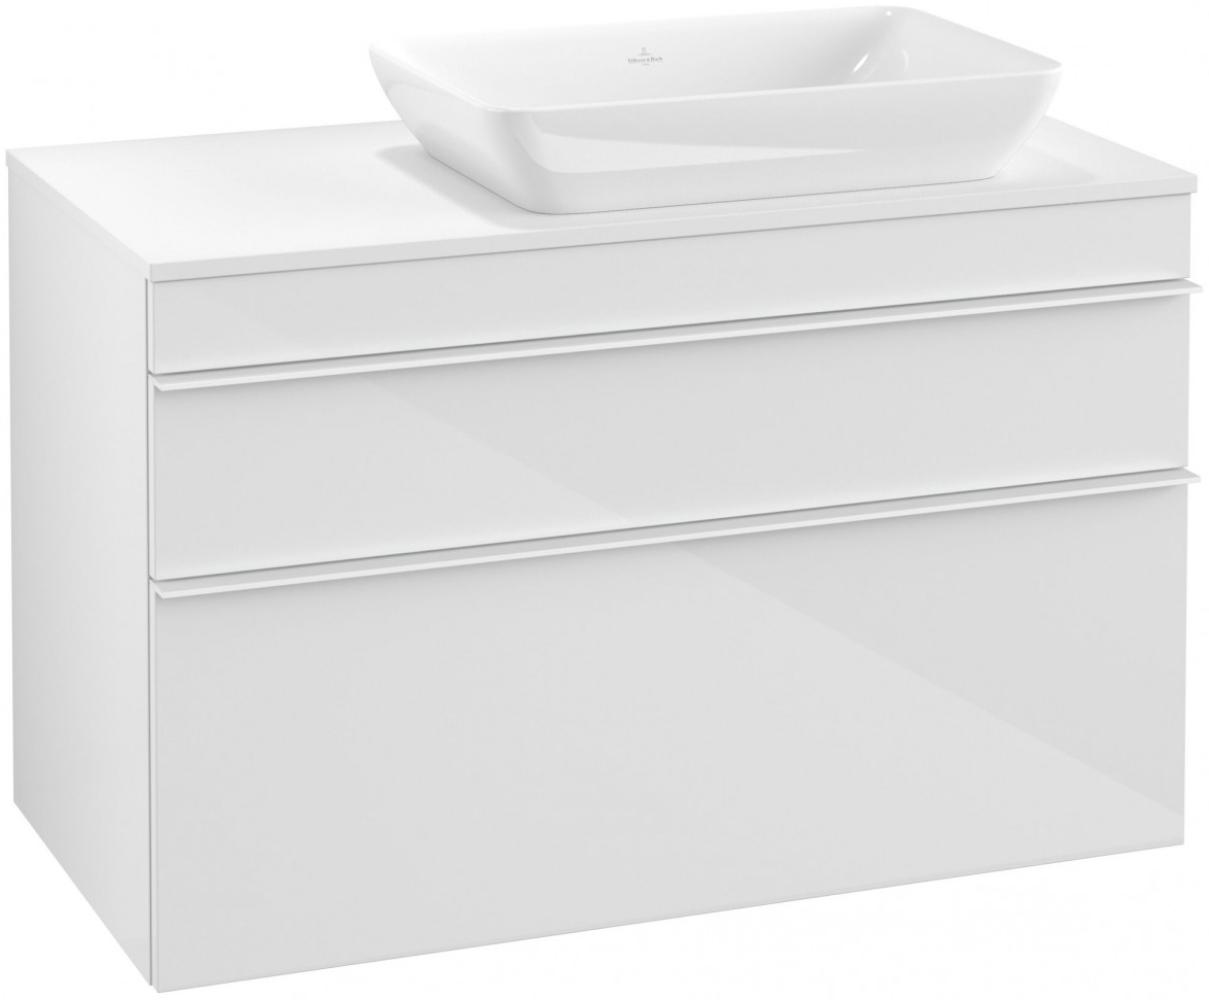 Villeroy & Boch VENTICELLO Waschtischunterschrank 95 cm breit, Weiß, Griff Weiß, für Becken rechts Bild 1